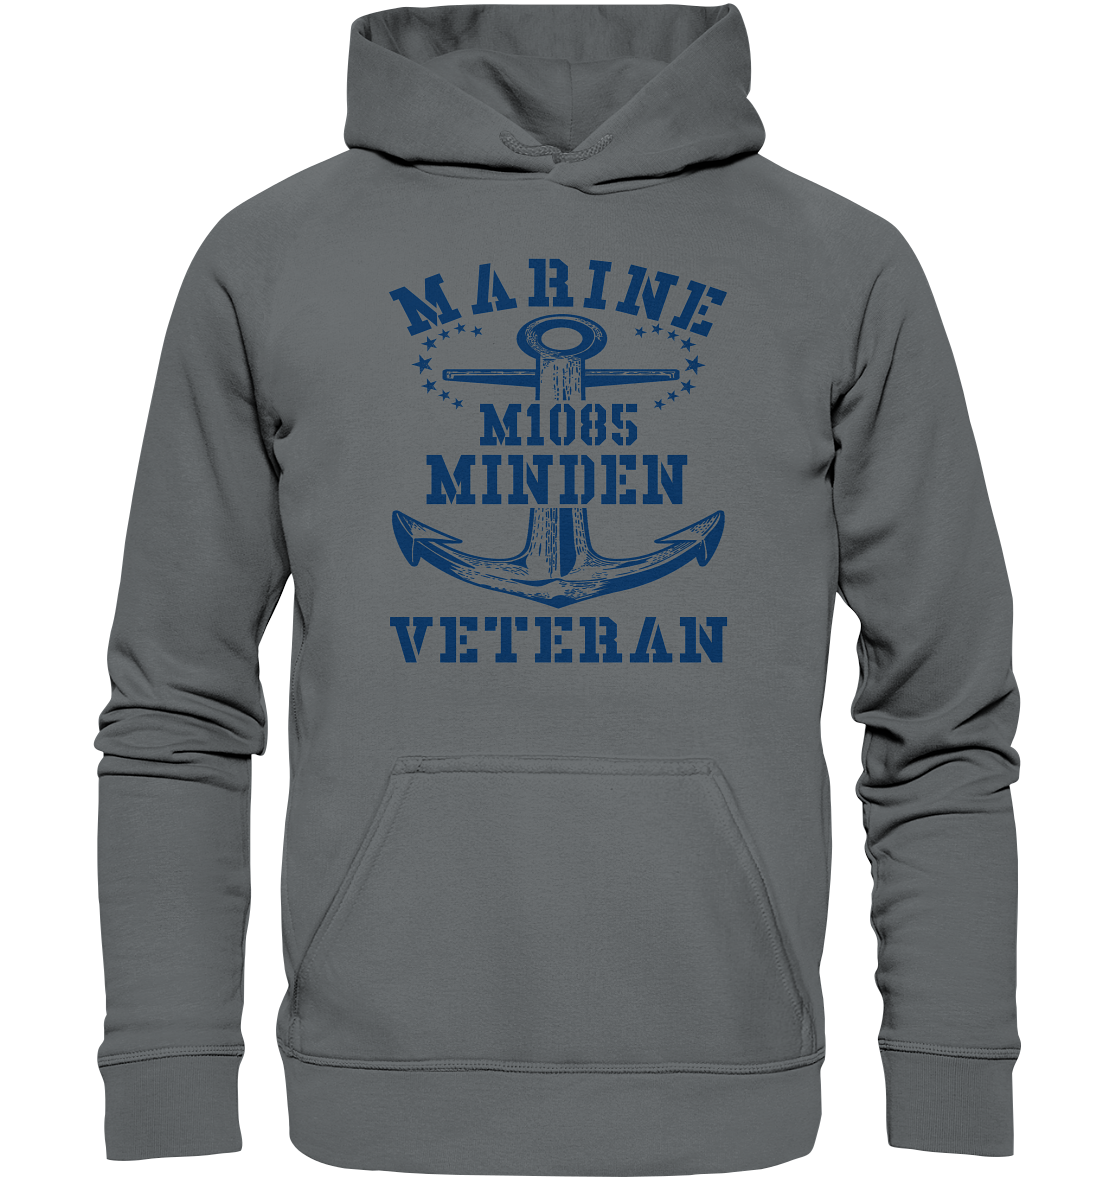 Marine Veteran M1085 MINDEN - Basic Unisex Hoodie